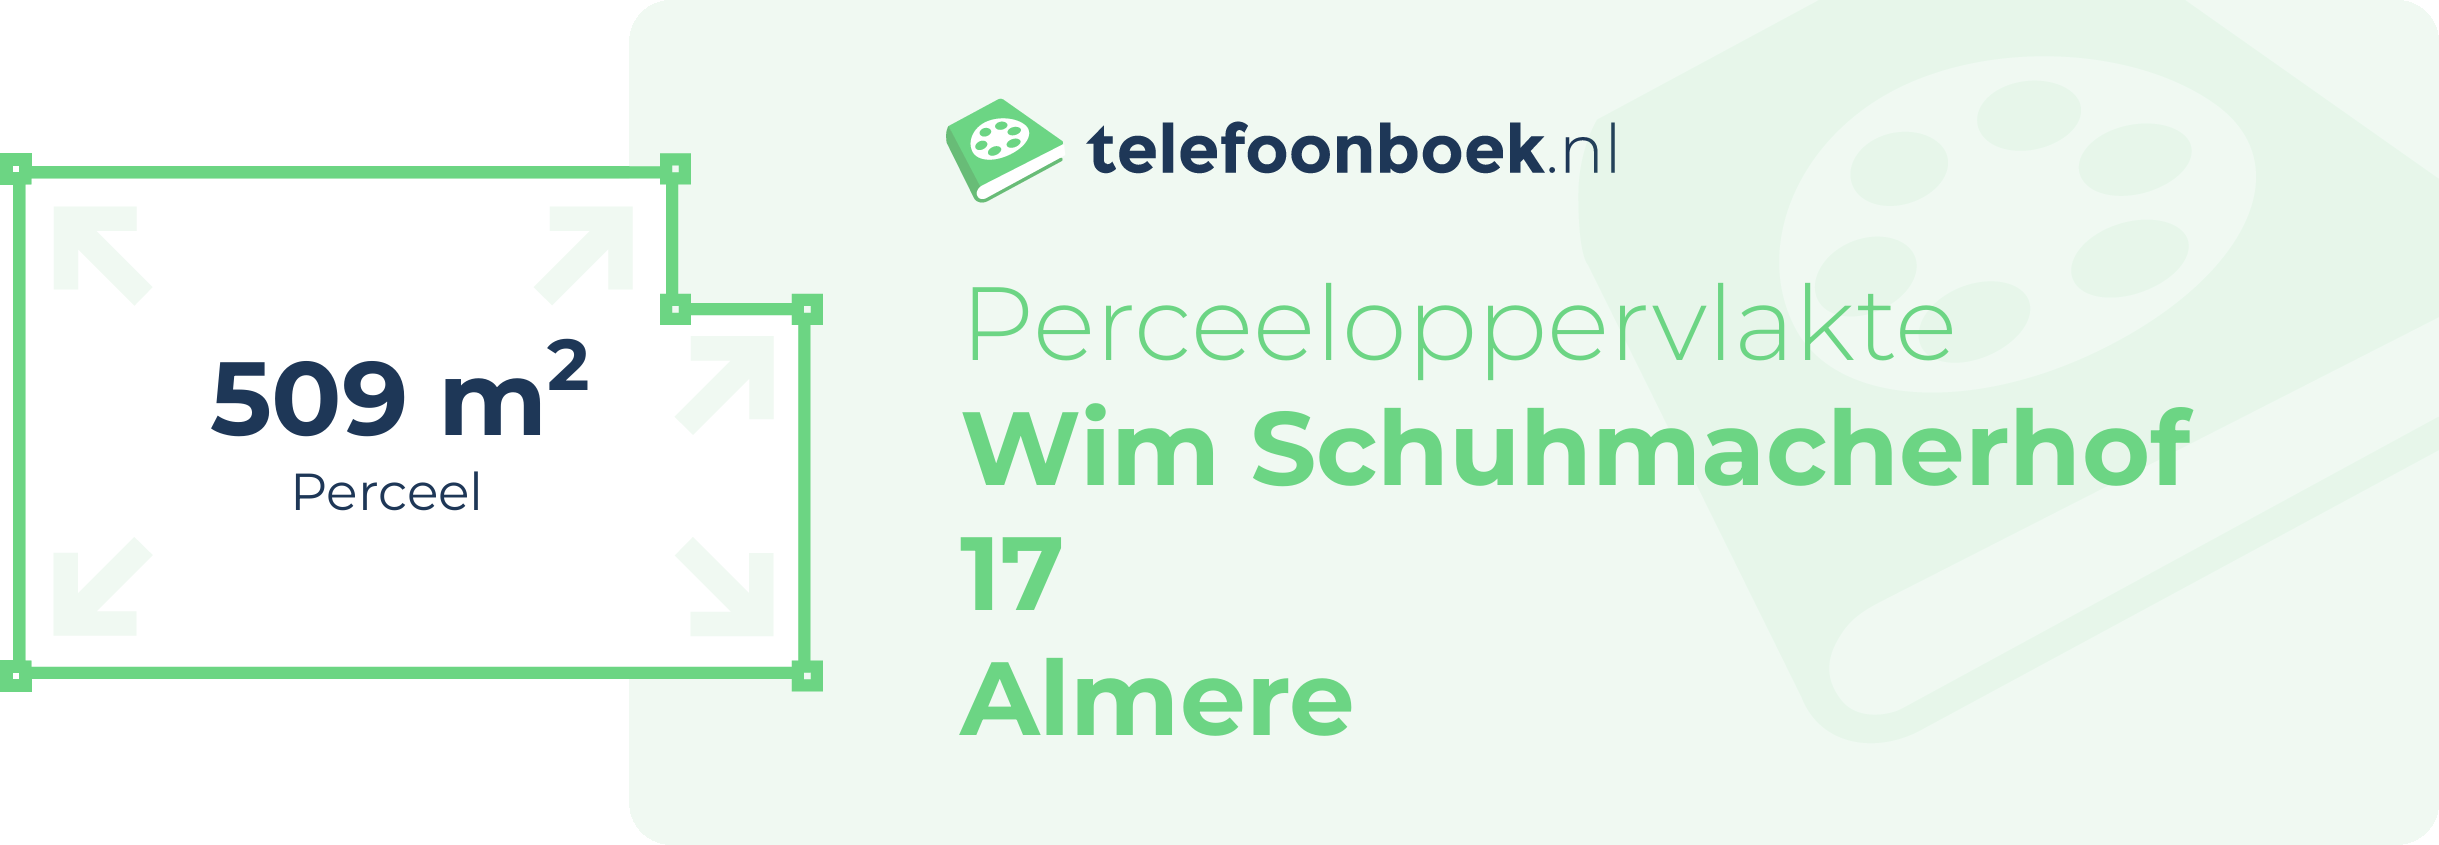 Perceeloppervlakte Wim Schuhmacherhof 17 Almere